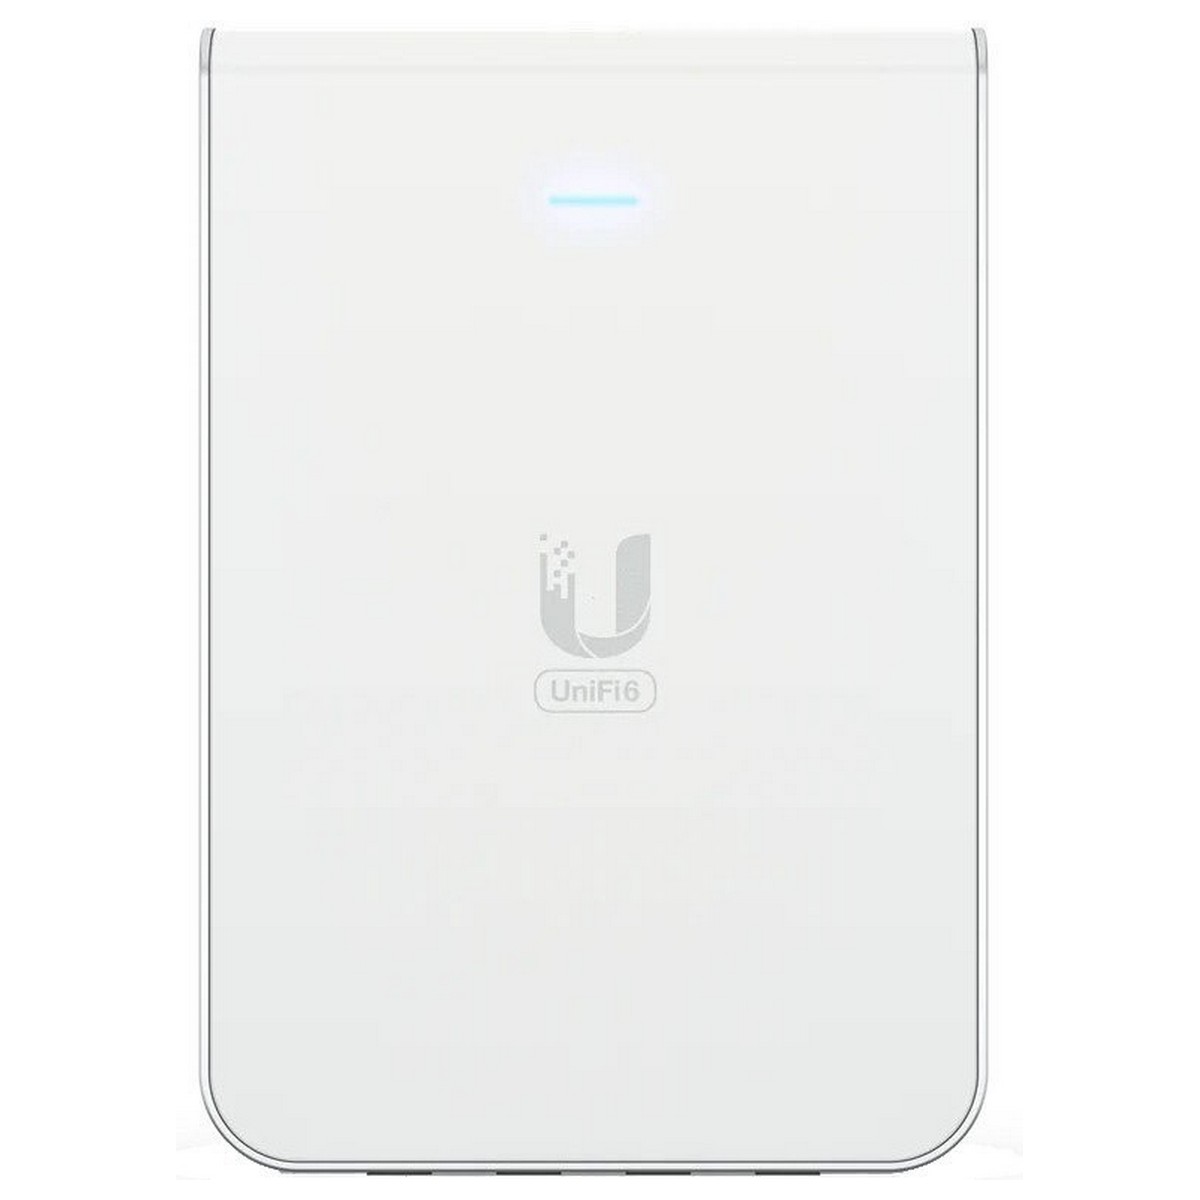 Точка доступа Ubiquiti UniFi U6 In-Wall (U6-IW)